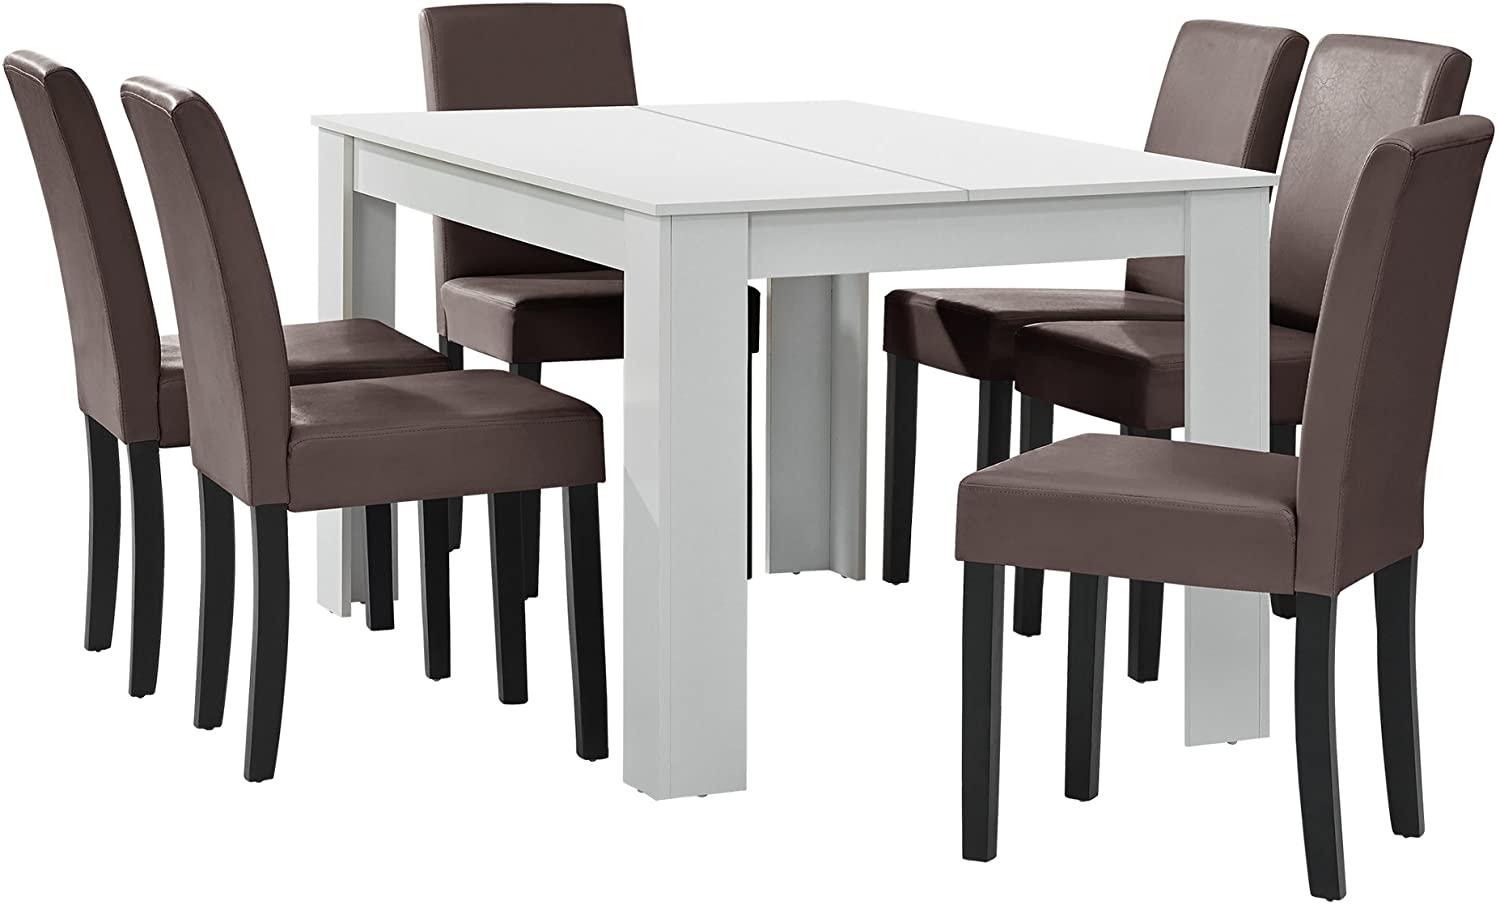 Esstisch weiß mit 6 Stühlen braun [140x90] Bild 1